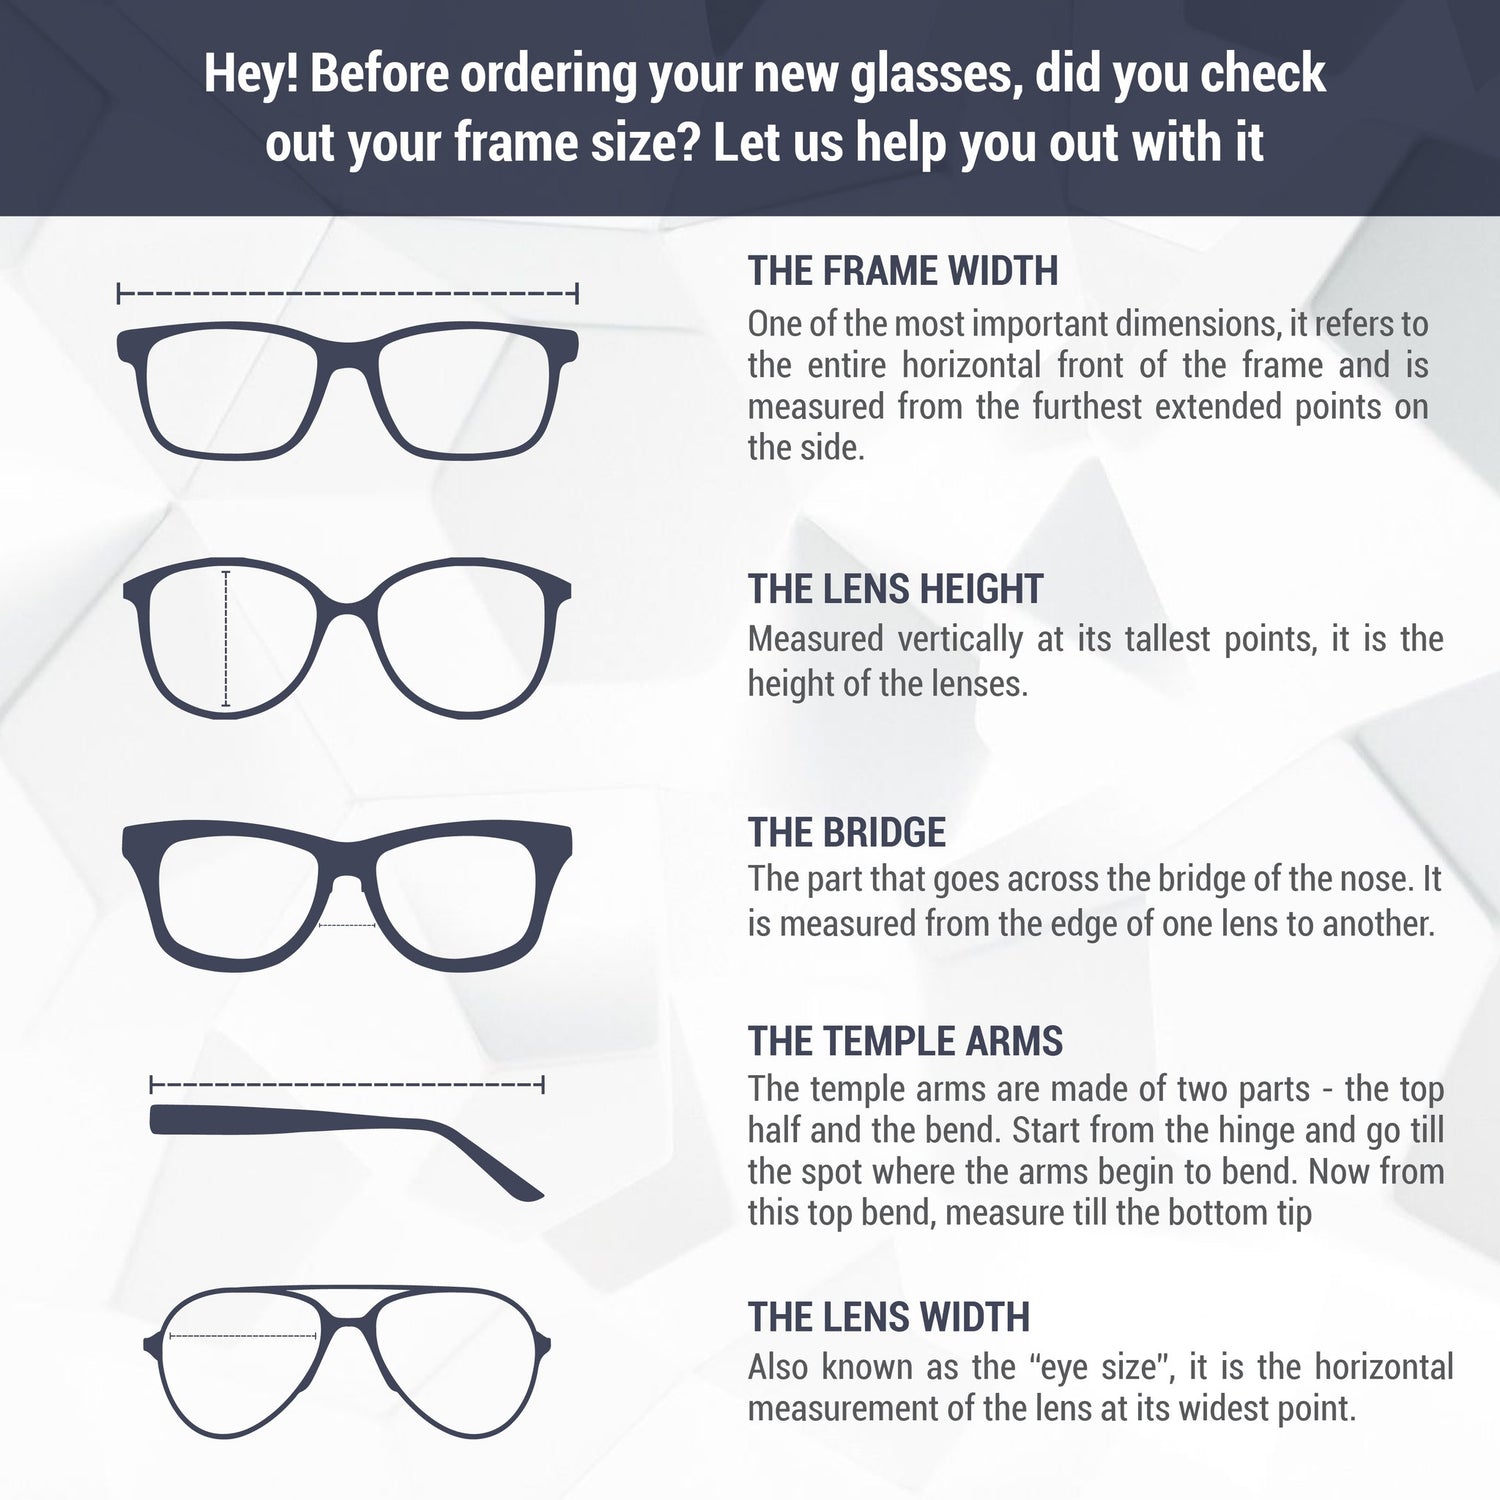 Monture de lunettes Carrera | Modèle 213